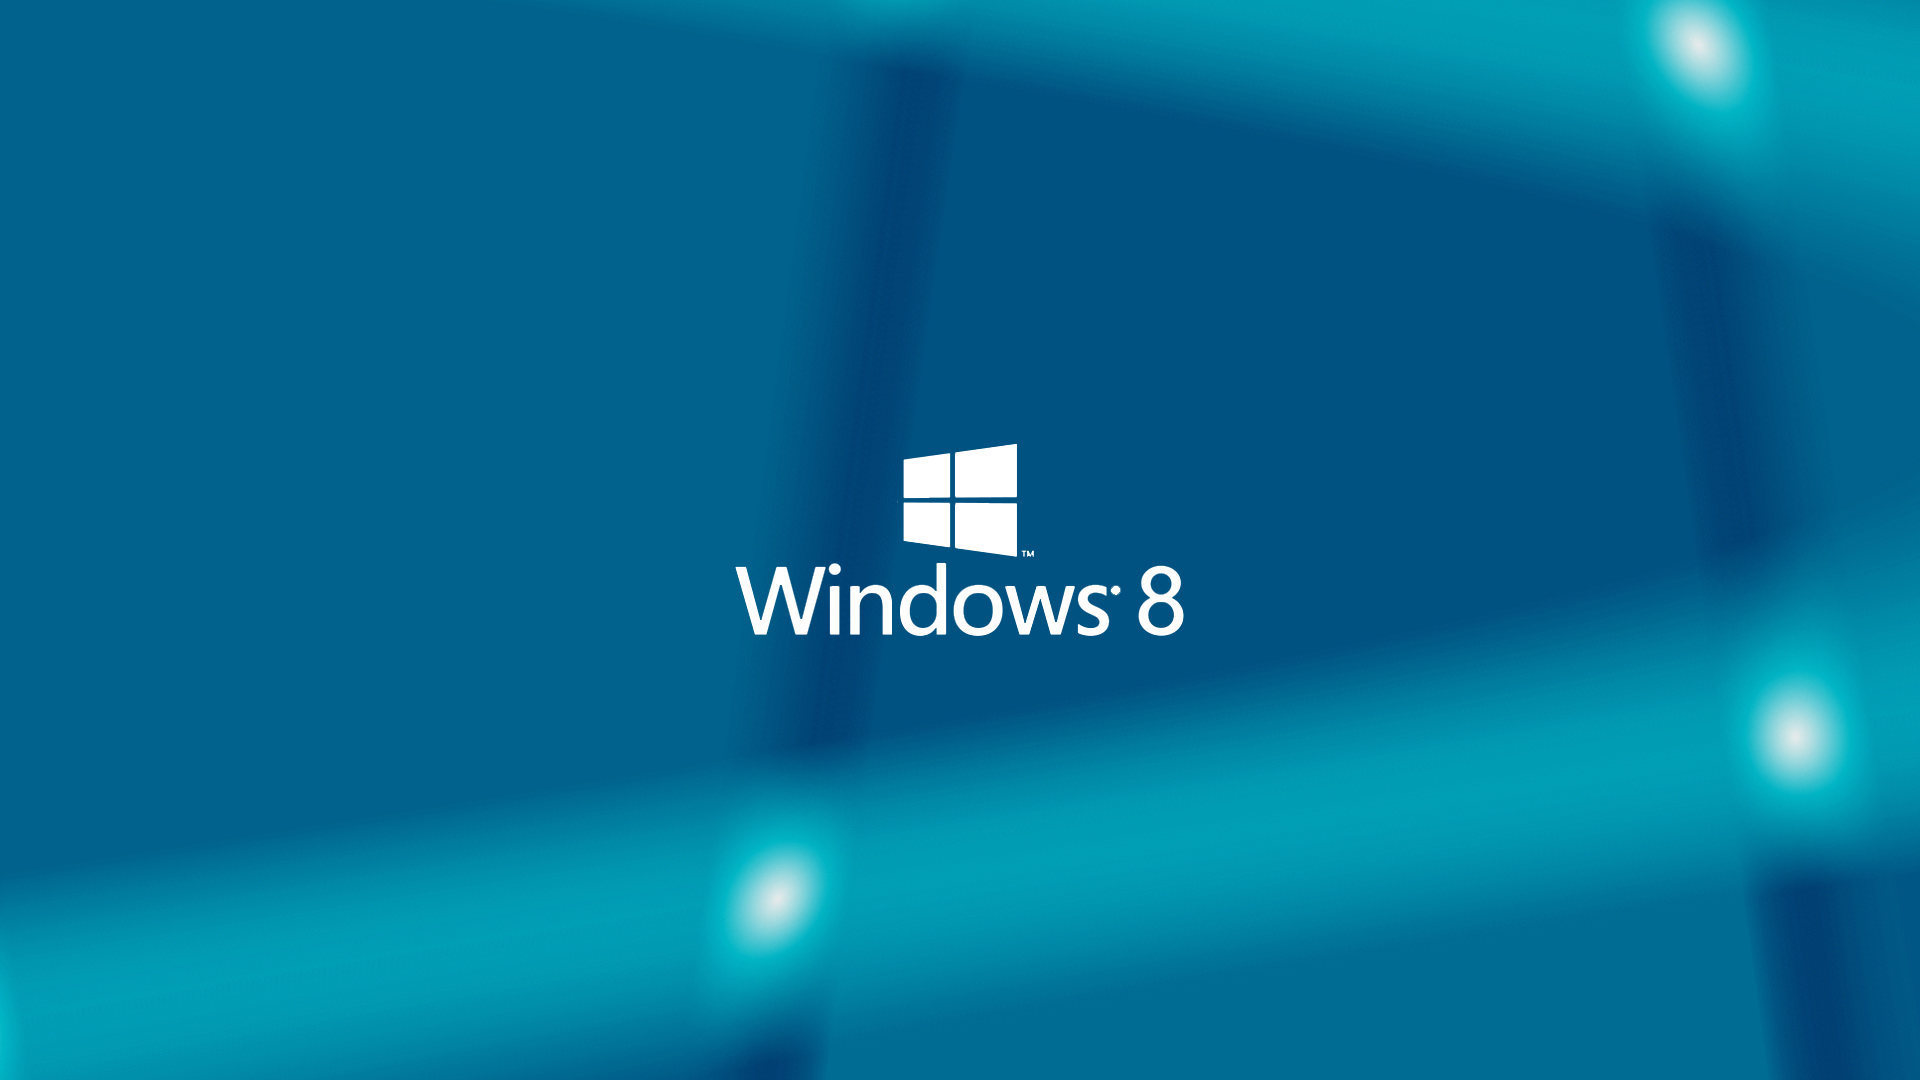 Start Menu And Metro Apps In Desktop Ing To Windows Geek News